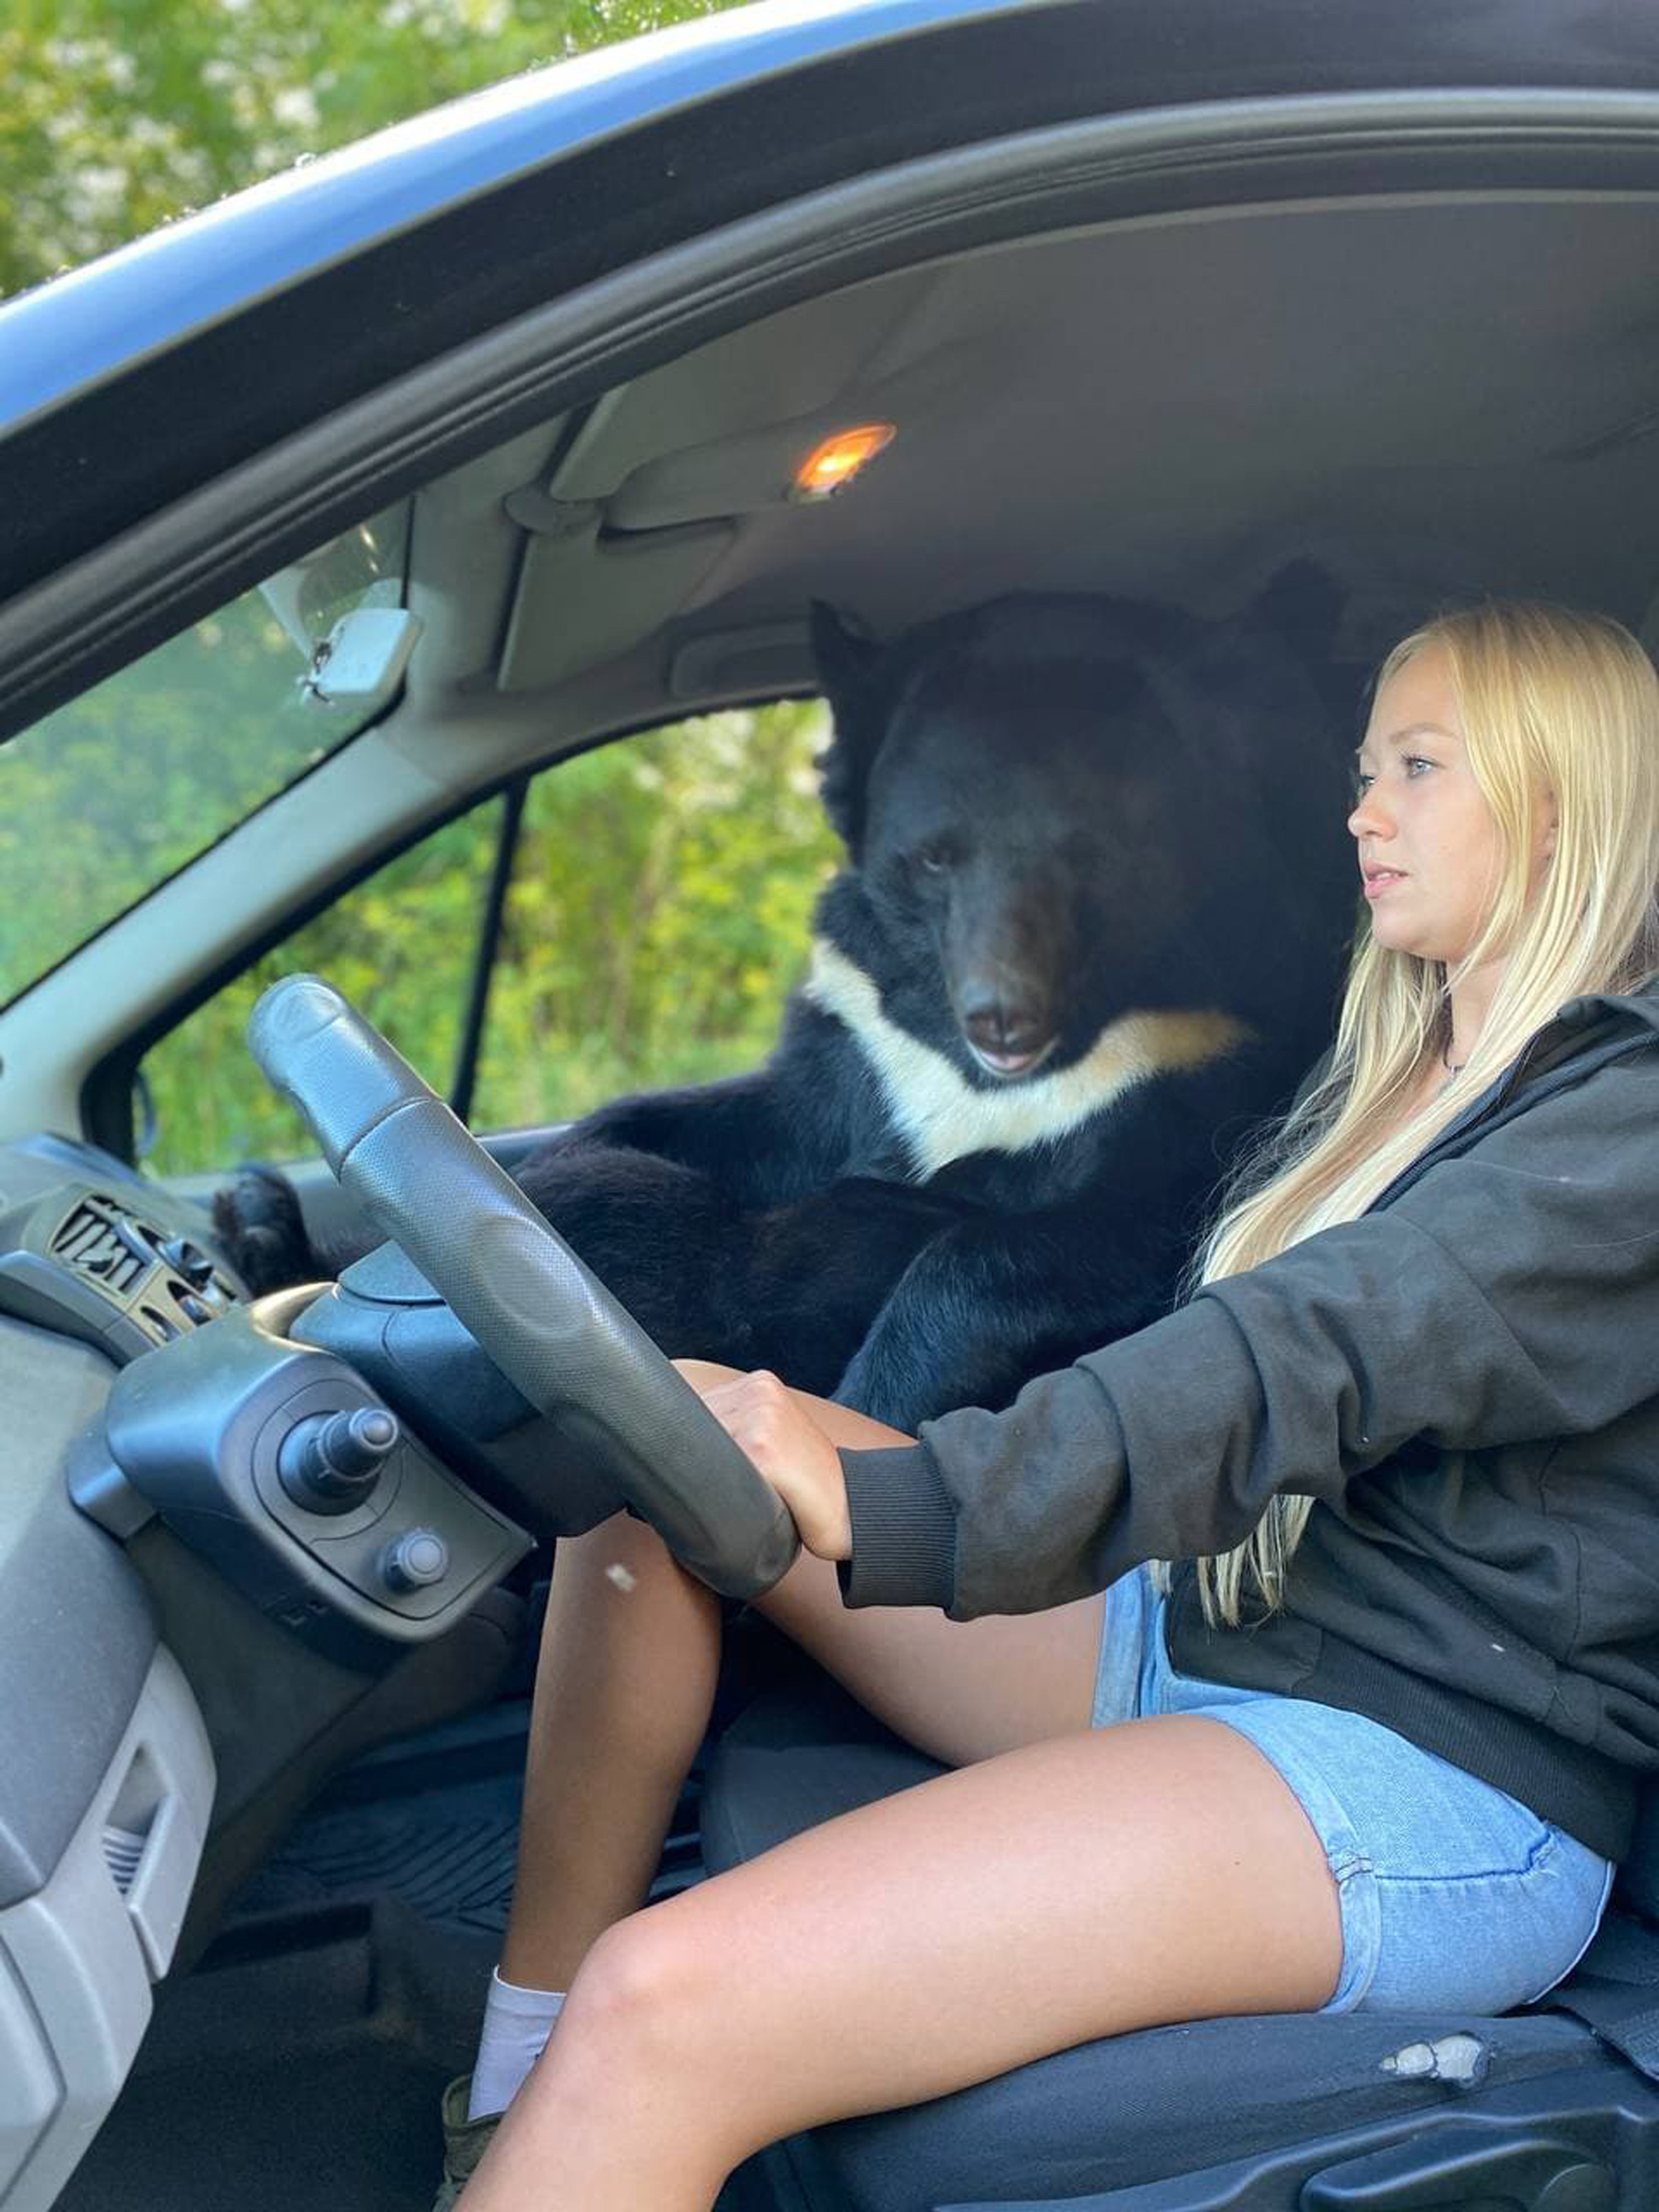 BEAR IN CAR